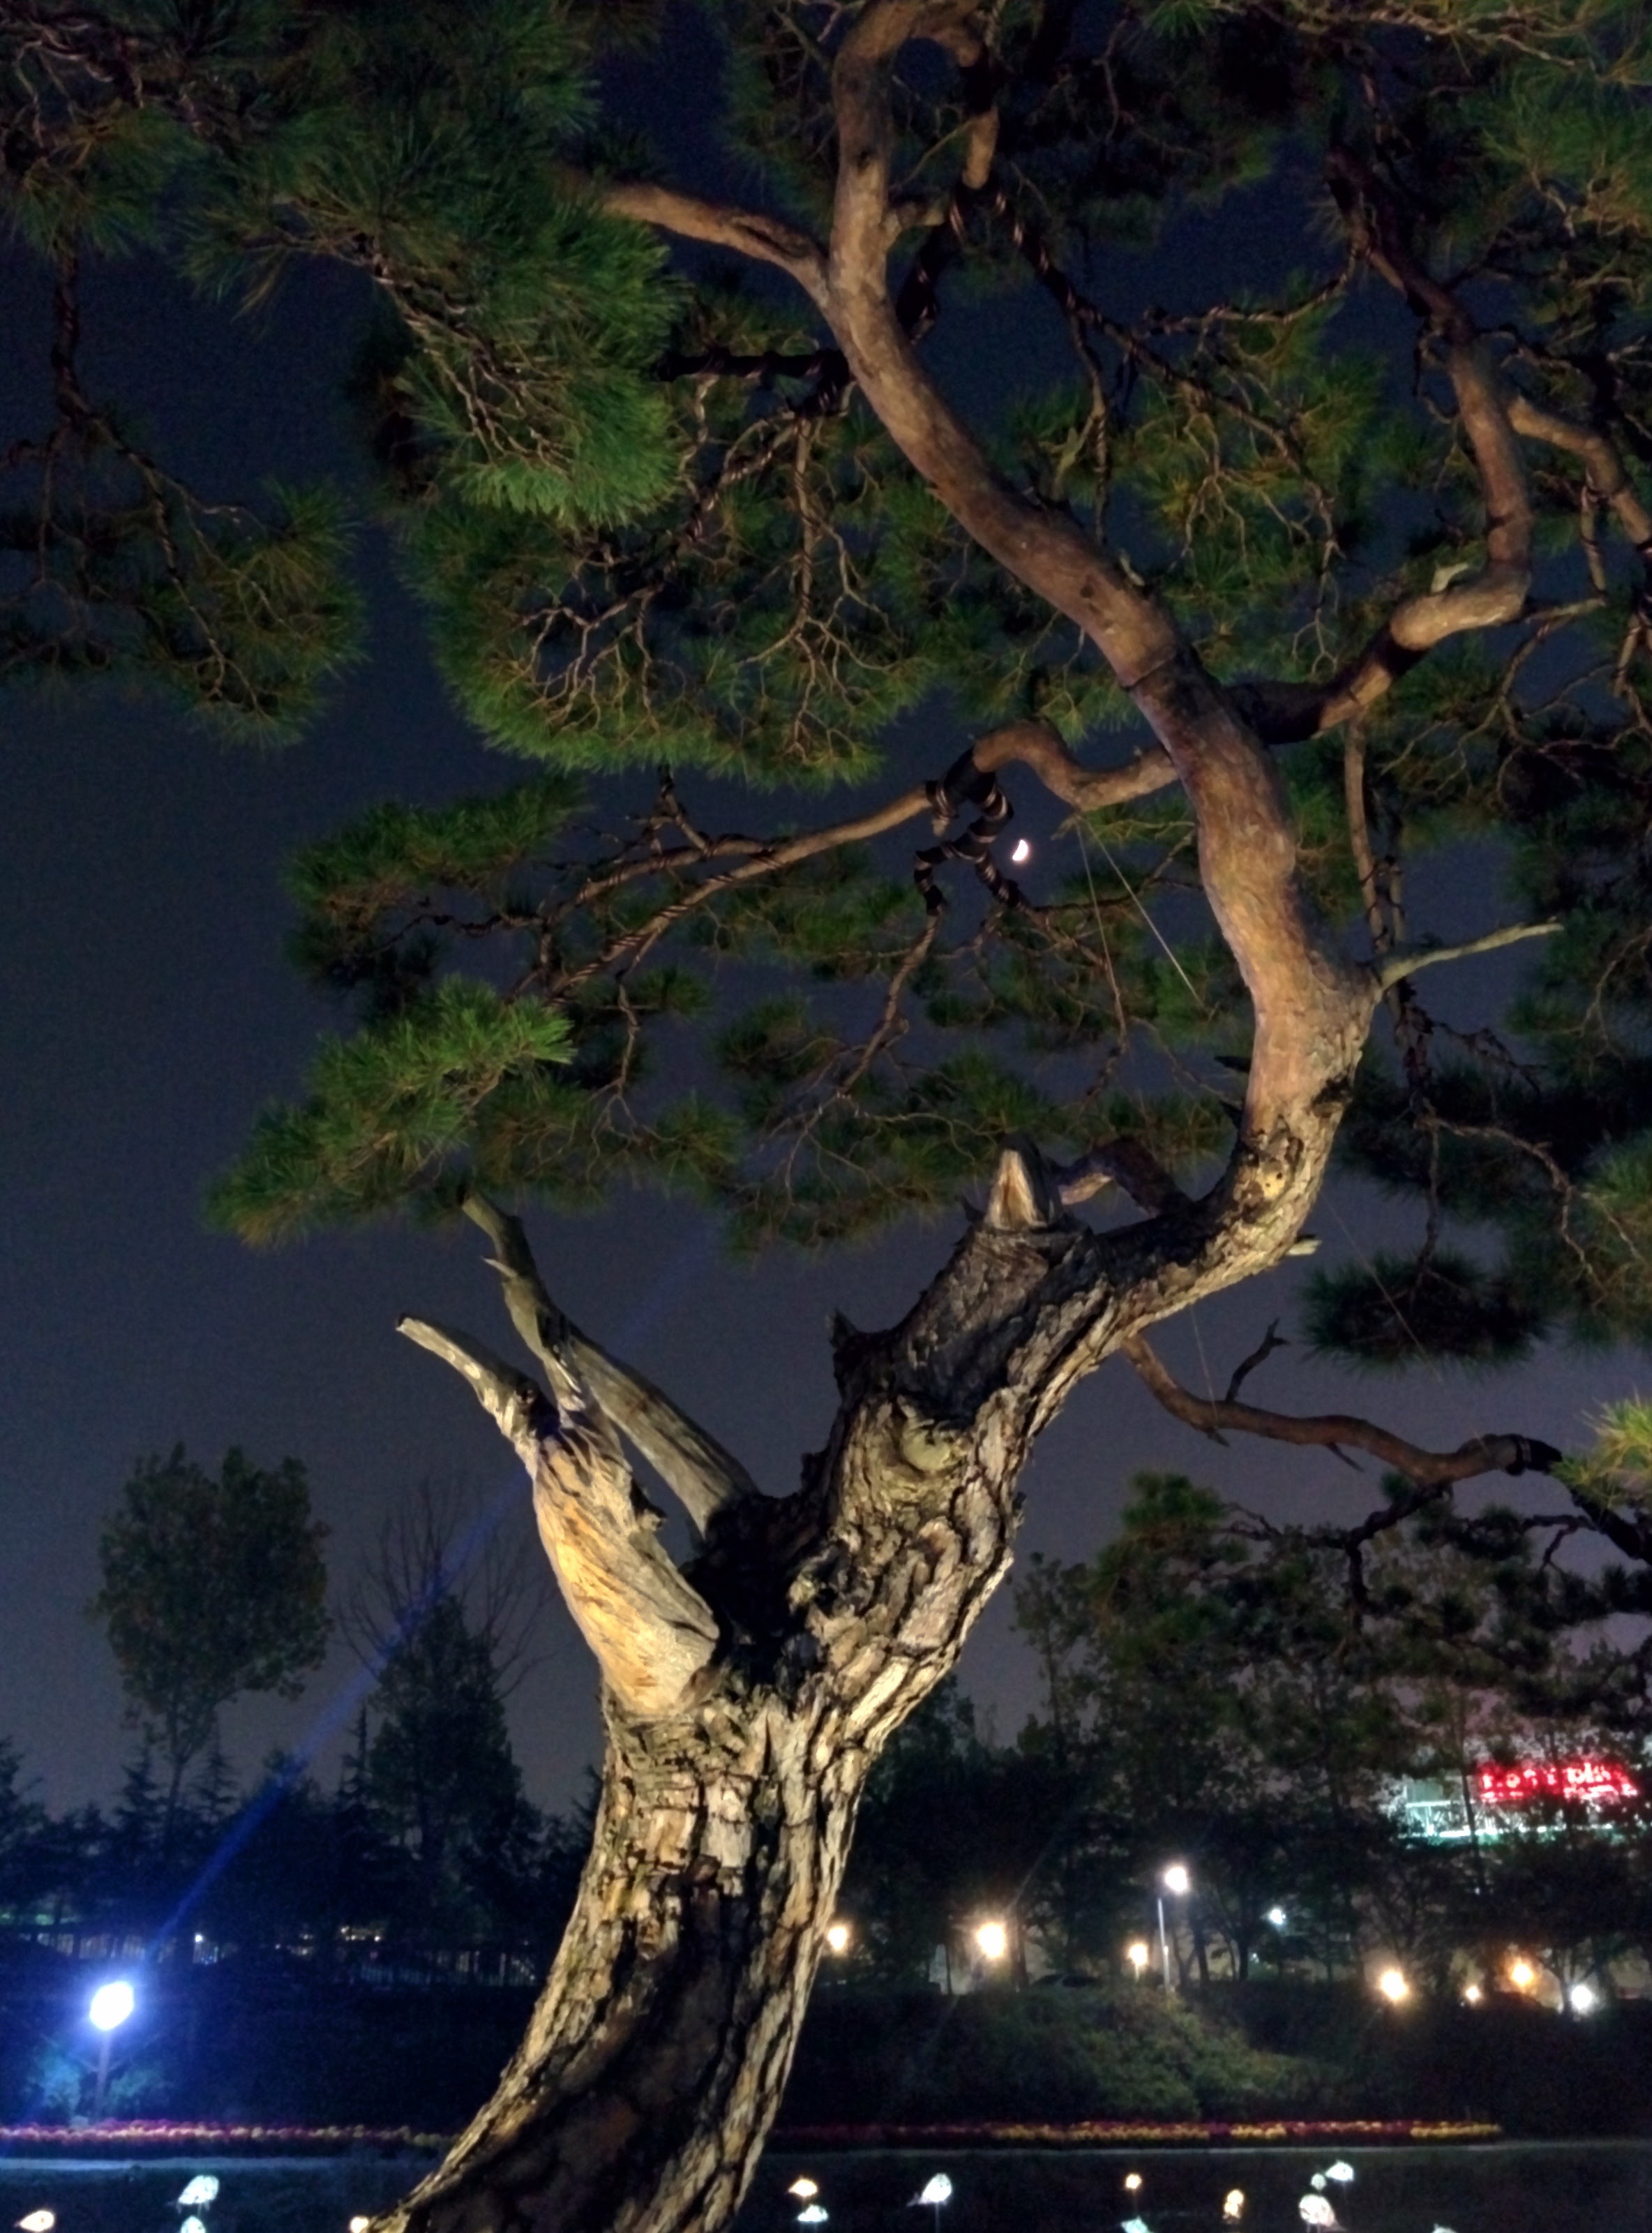 IMG_20151020_191954.jpg 유성국화전시회 야경, 달과 소나무